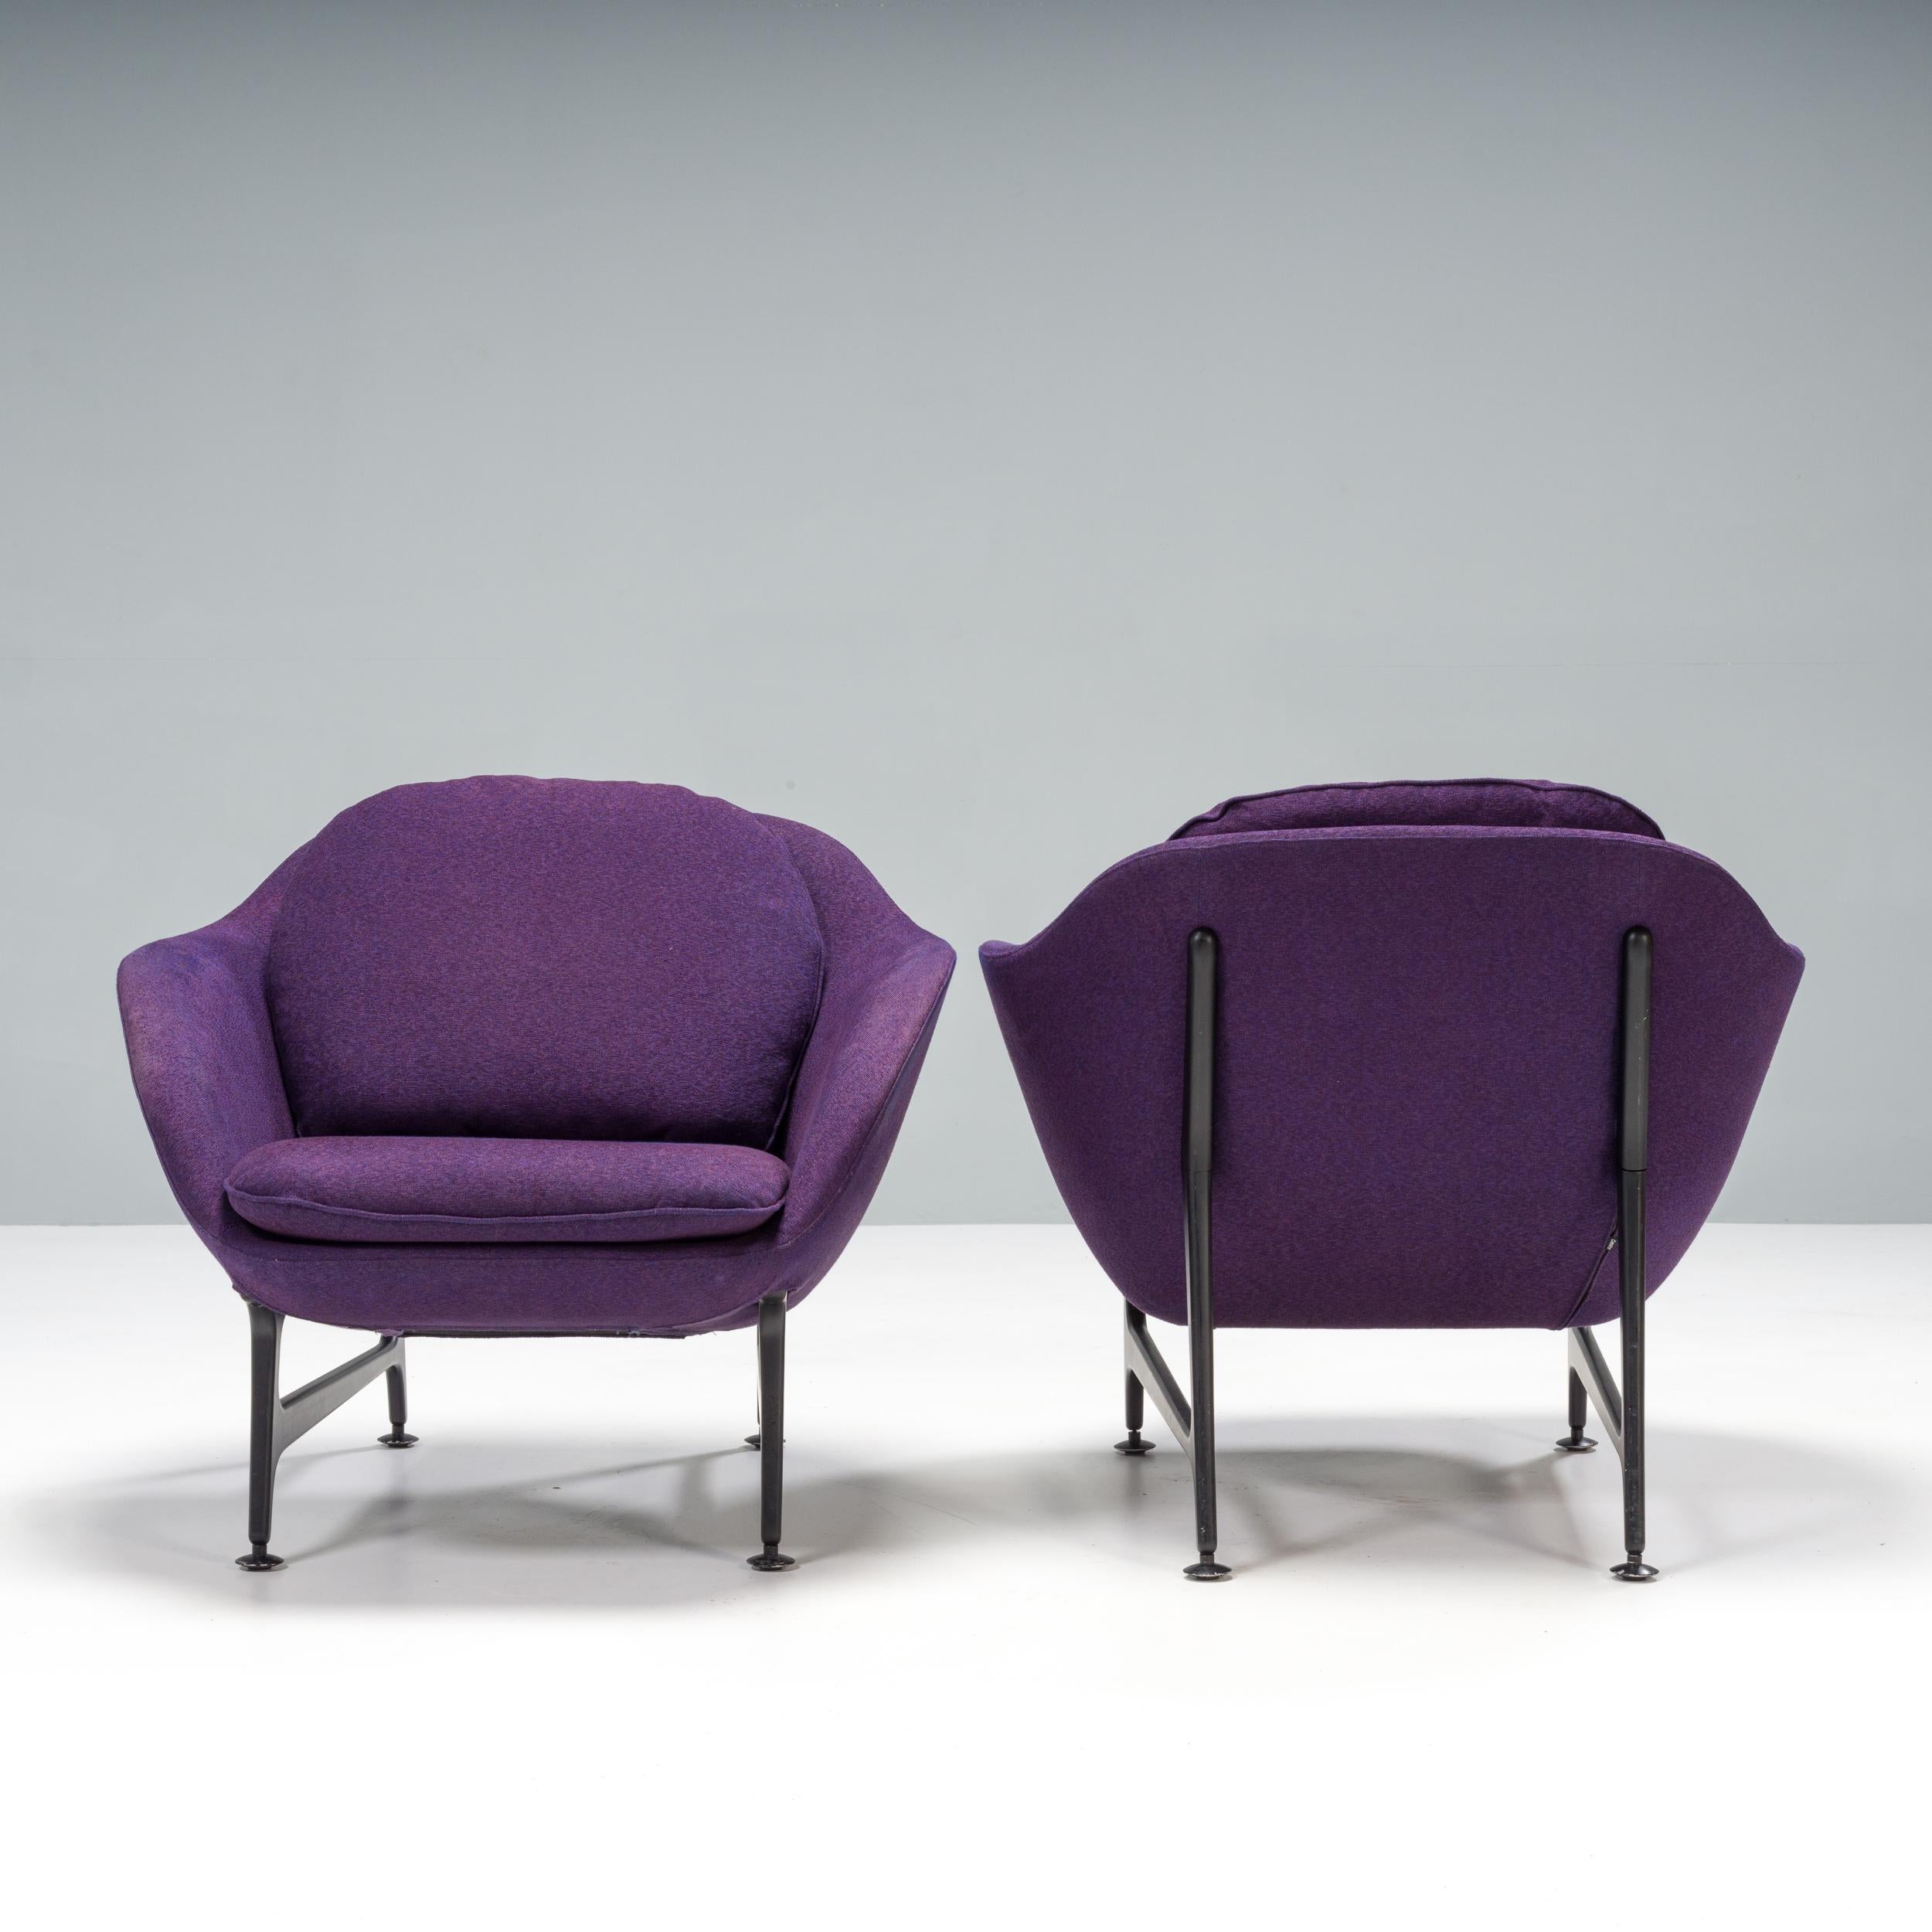 Présentée pour la première fois au Salone del Mobile en 2014, la collection de sièges Vico a été conçue par Jaime Hayon pour Cassina et porte le nom de son fils.

Inspiré par les archives de Cassina, le design de Hayon pour Vico concilie